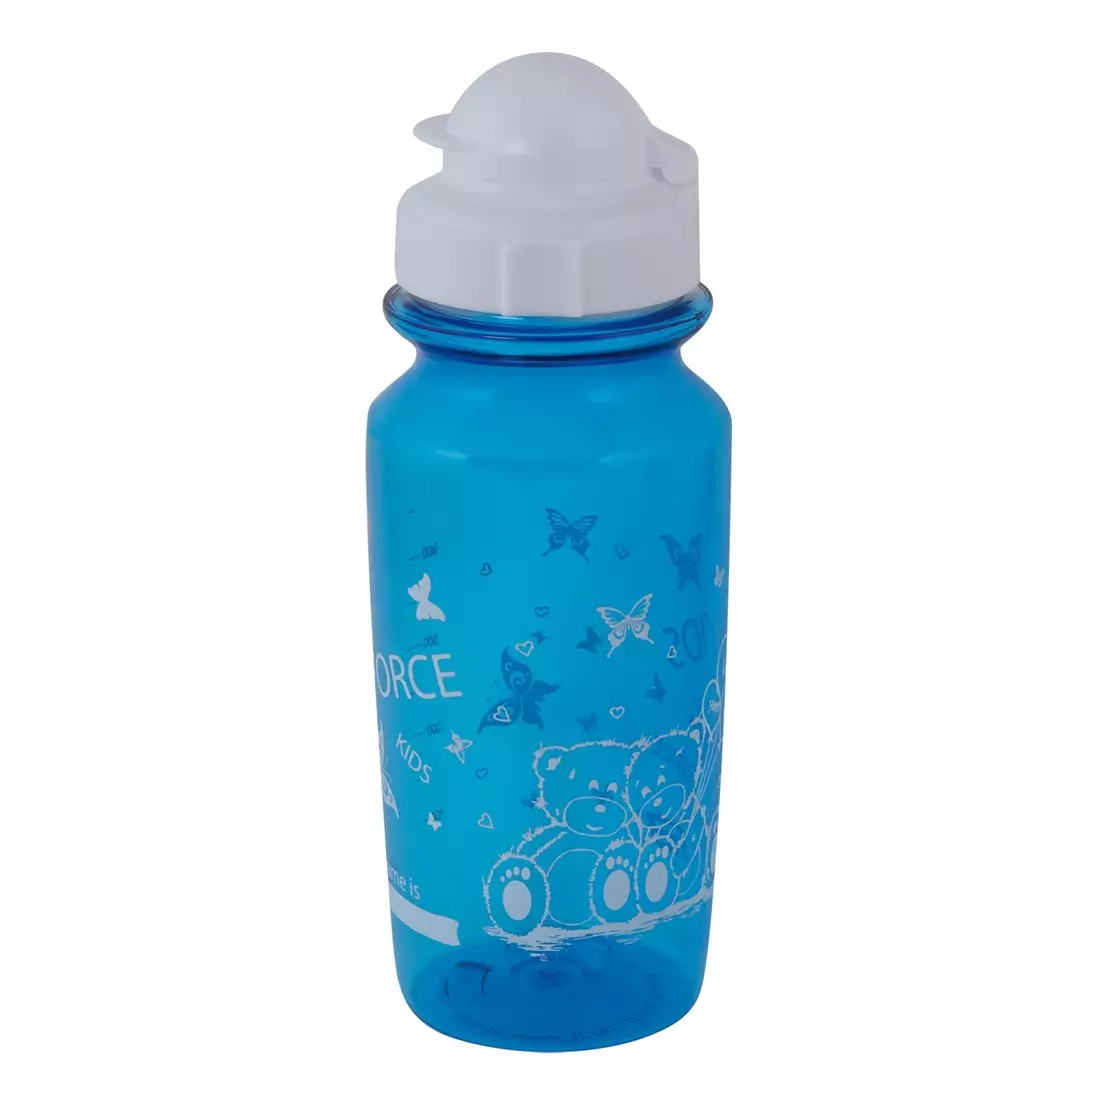 FORCE sports bottle for children BEAR 500ml blue 250710